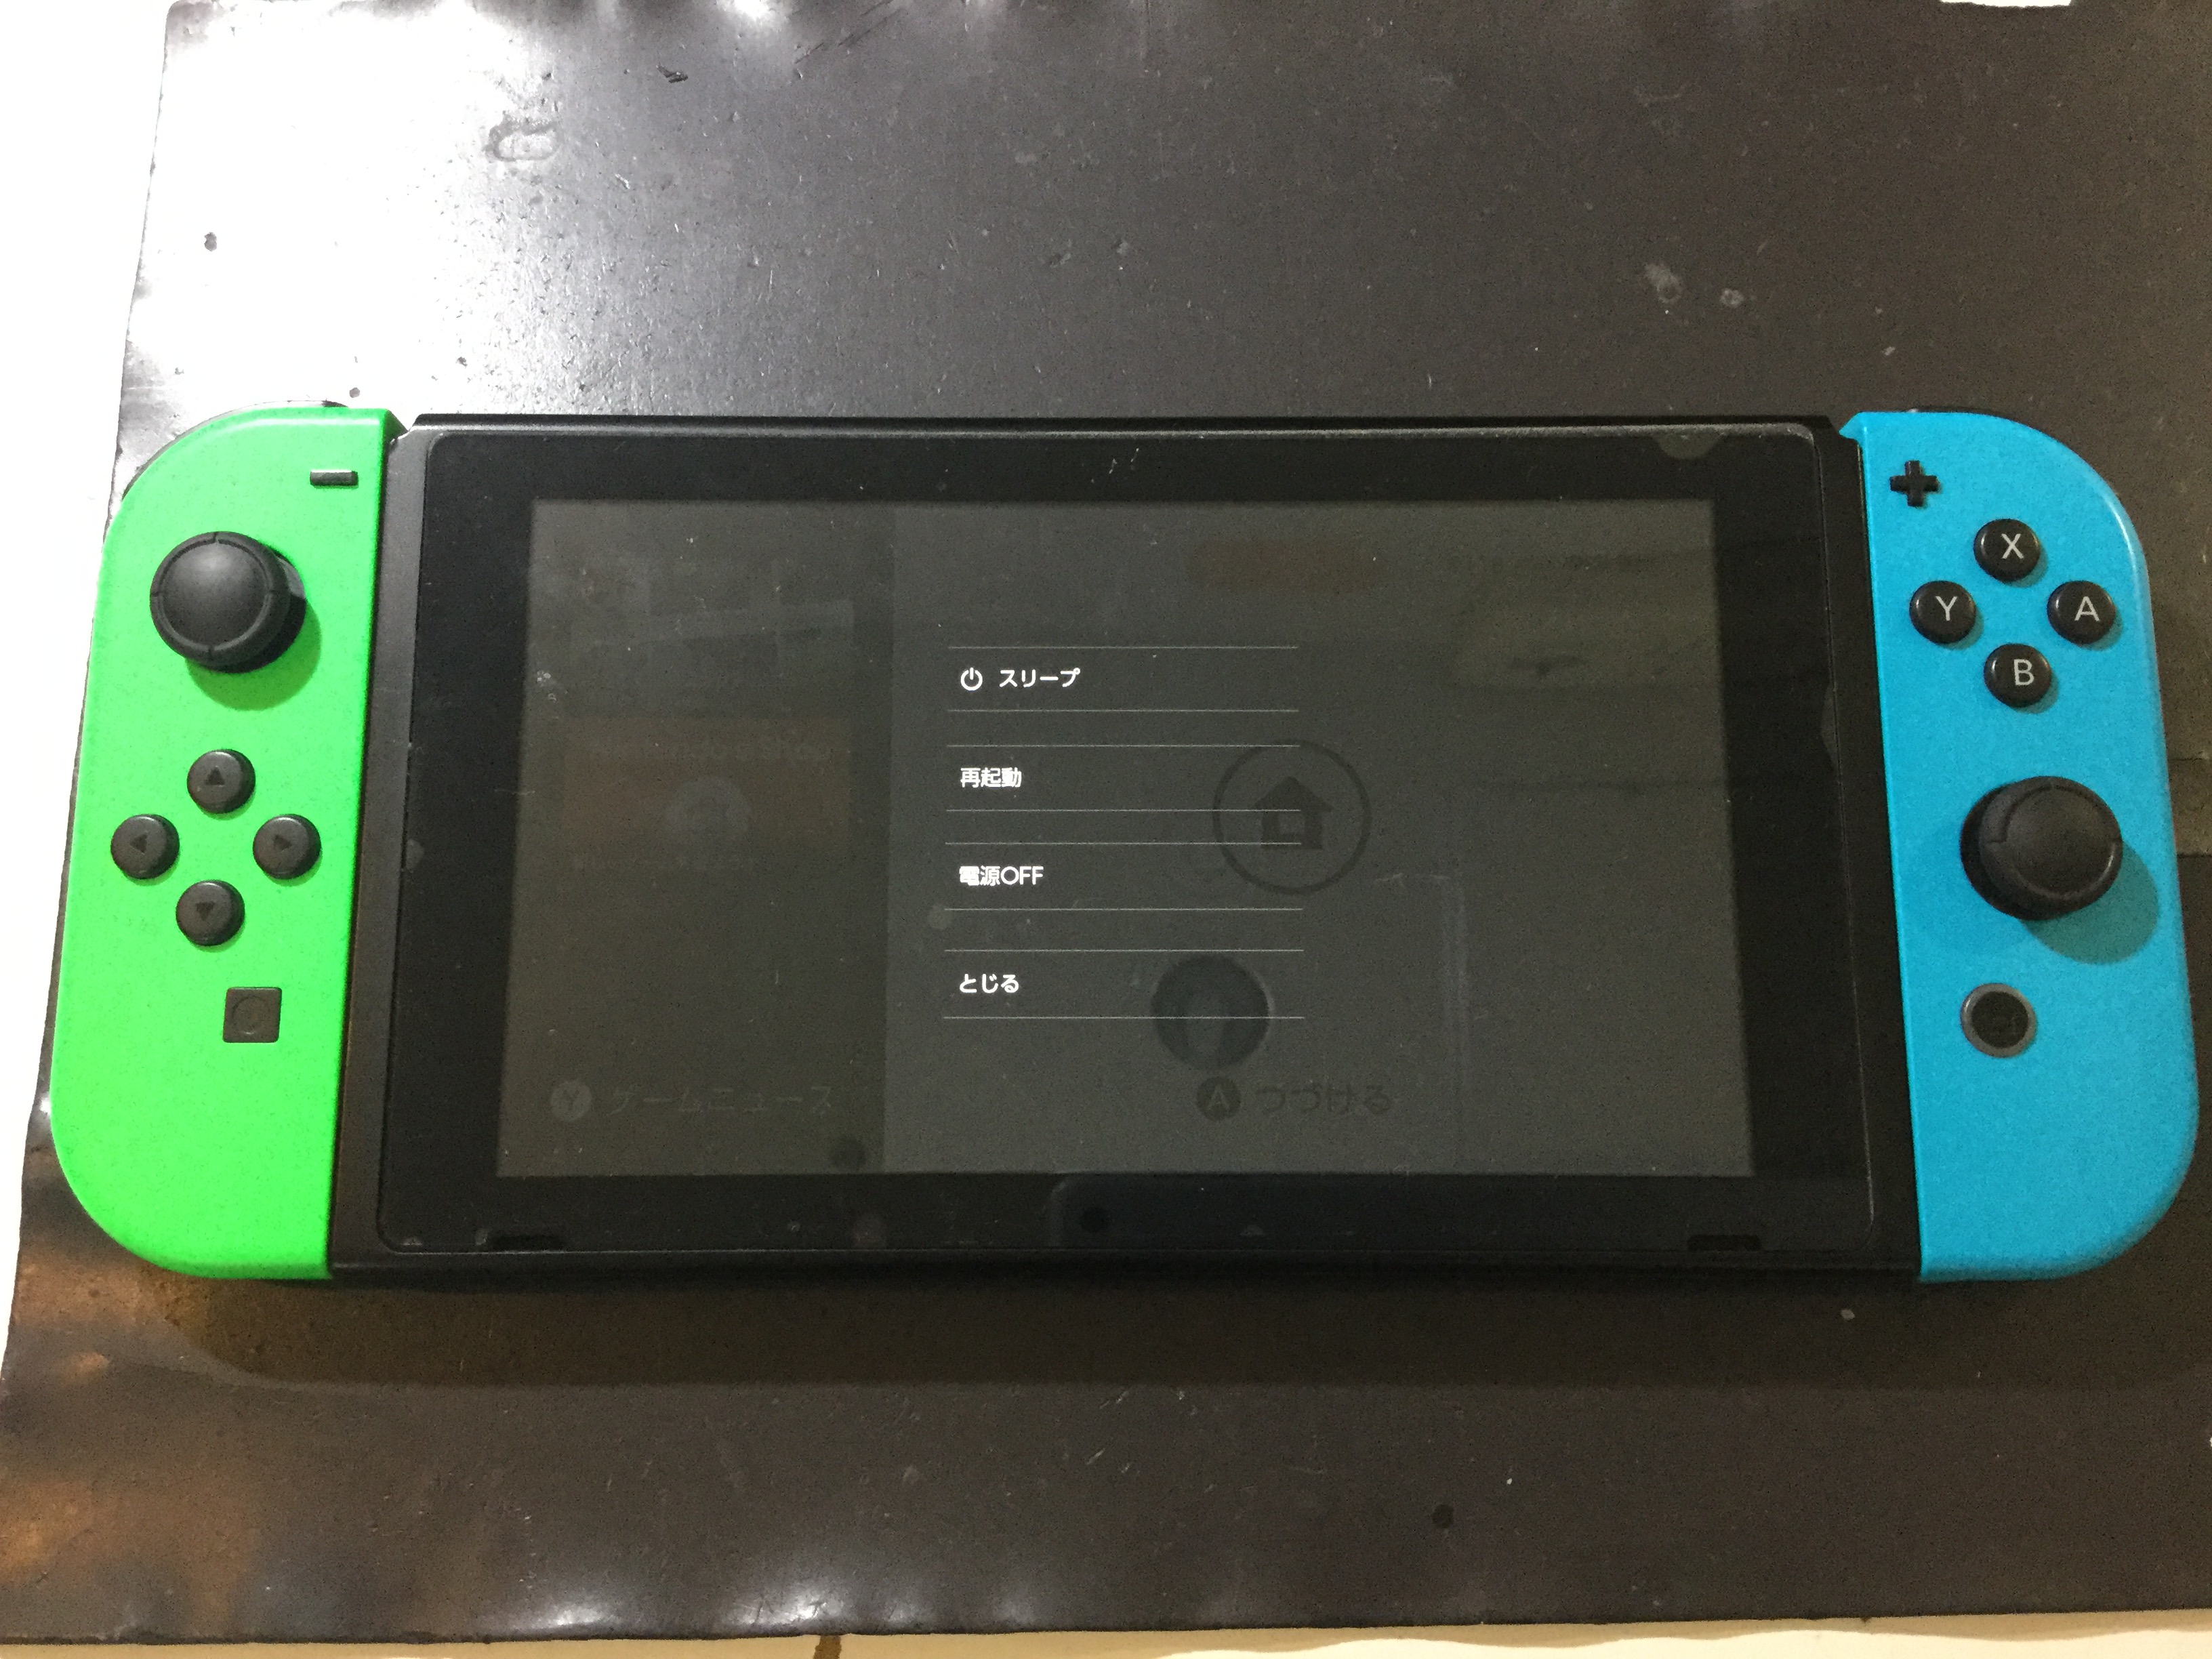 ニンテンドースイッチでエラーコードが出てしまったら Switch Nintendo3ds Psp 修理のゲームホスピタル Switch Nintendo3ds ニンテンドーds Psp 修理